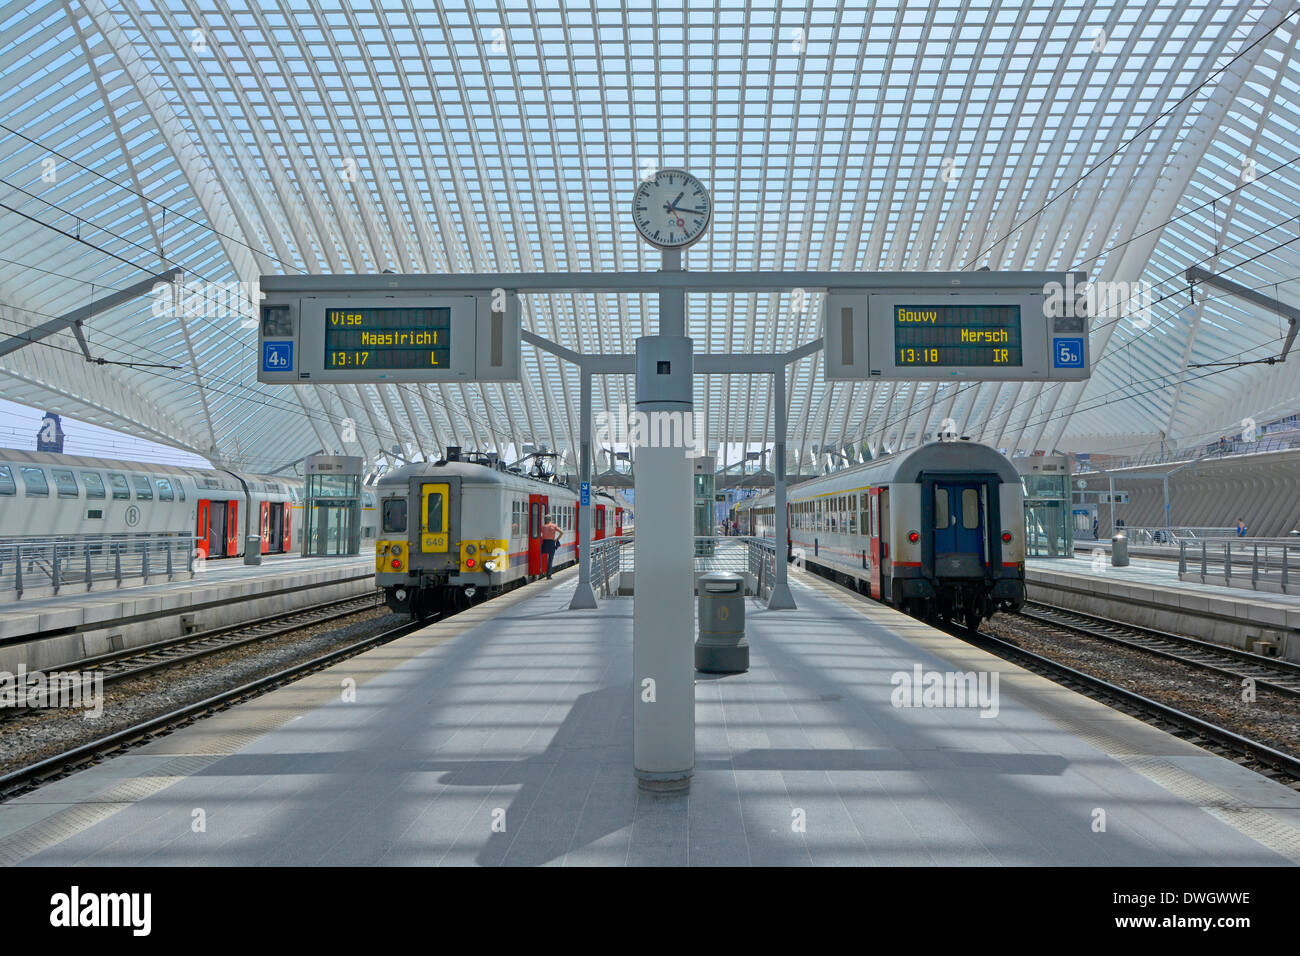 Symmetrische Architektur des modernen öffentlichen Verkehr Lüttich Belgien EU-Bahnhof Bahnsteig Clock & große Glasdach für Züge Stockfoto